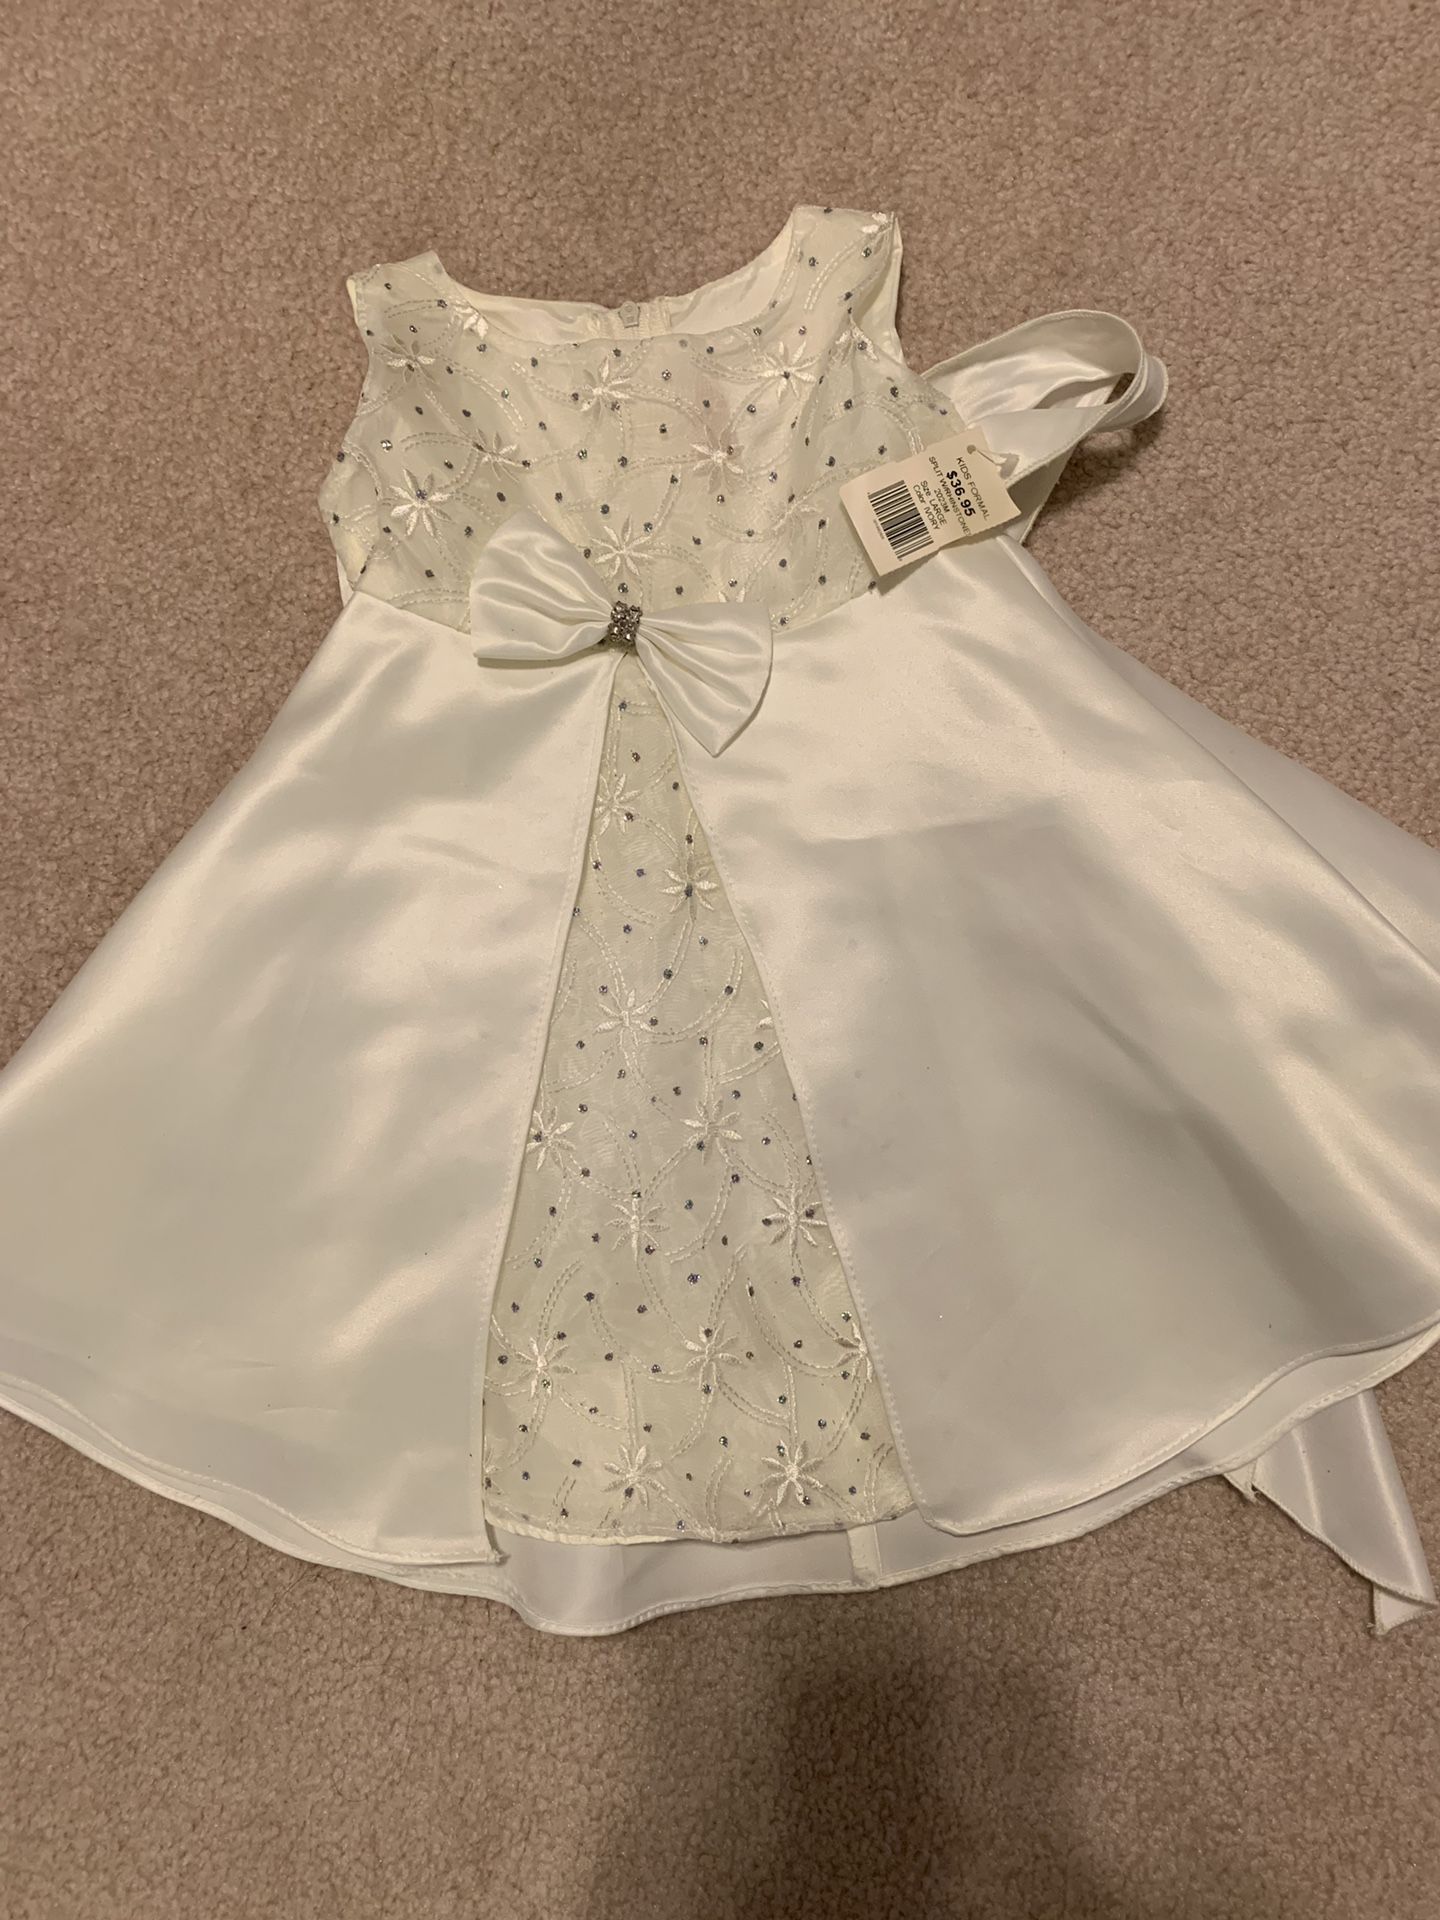 Flower girl - white dress - 12 month NWT